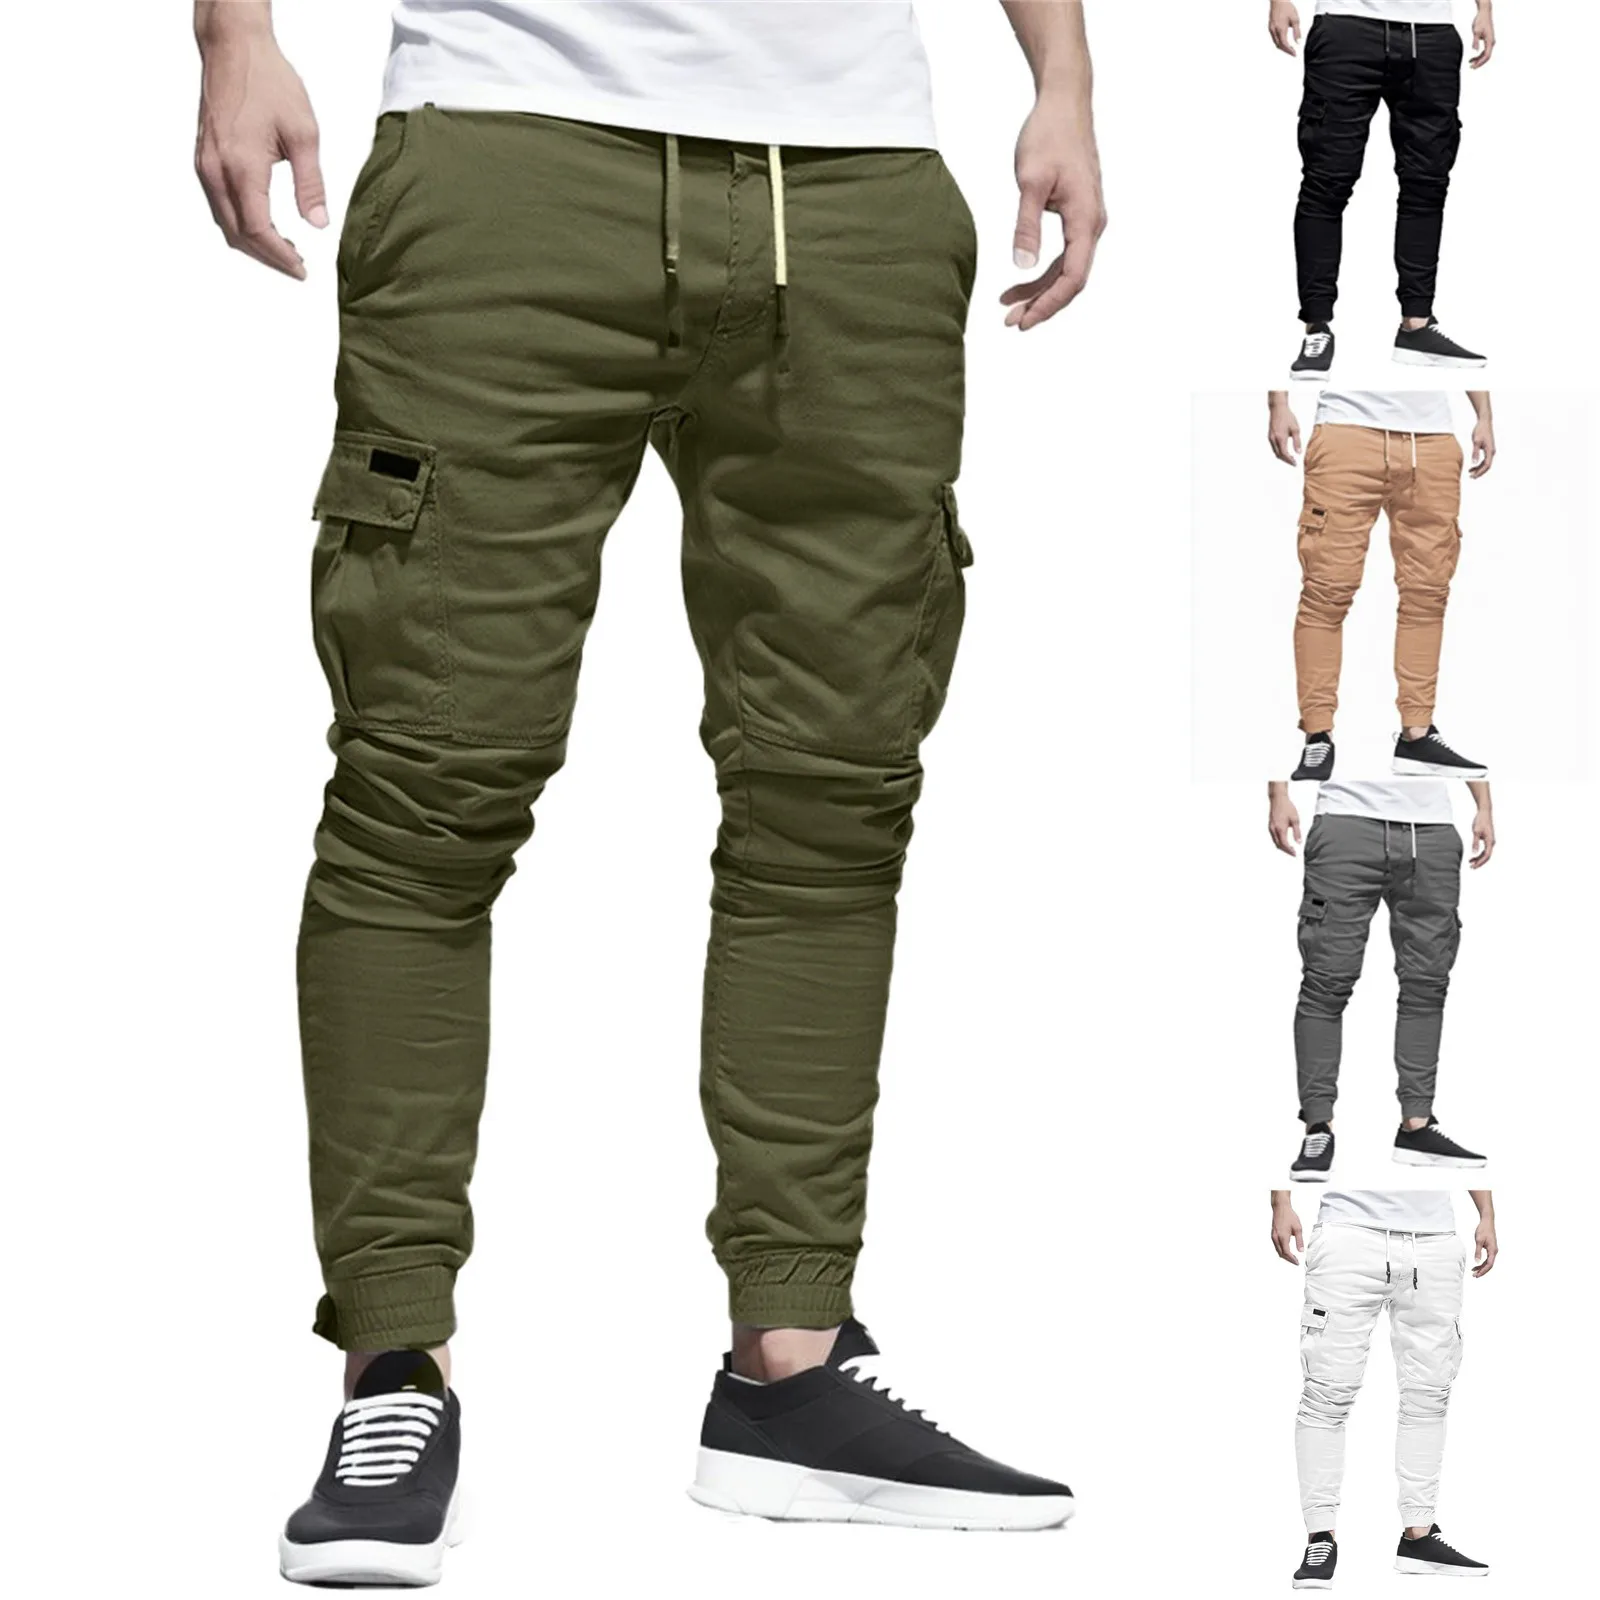 Casual Men Pants Fashion Big Pocket Hip Hop Harem Pants Quality Outwear Sweatpants Soft Mens Joggers Men's Trousers pantalones